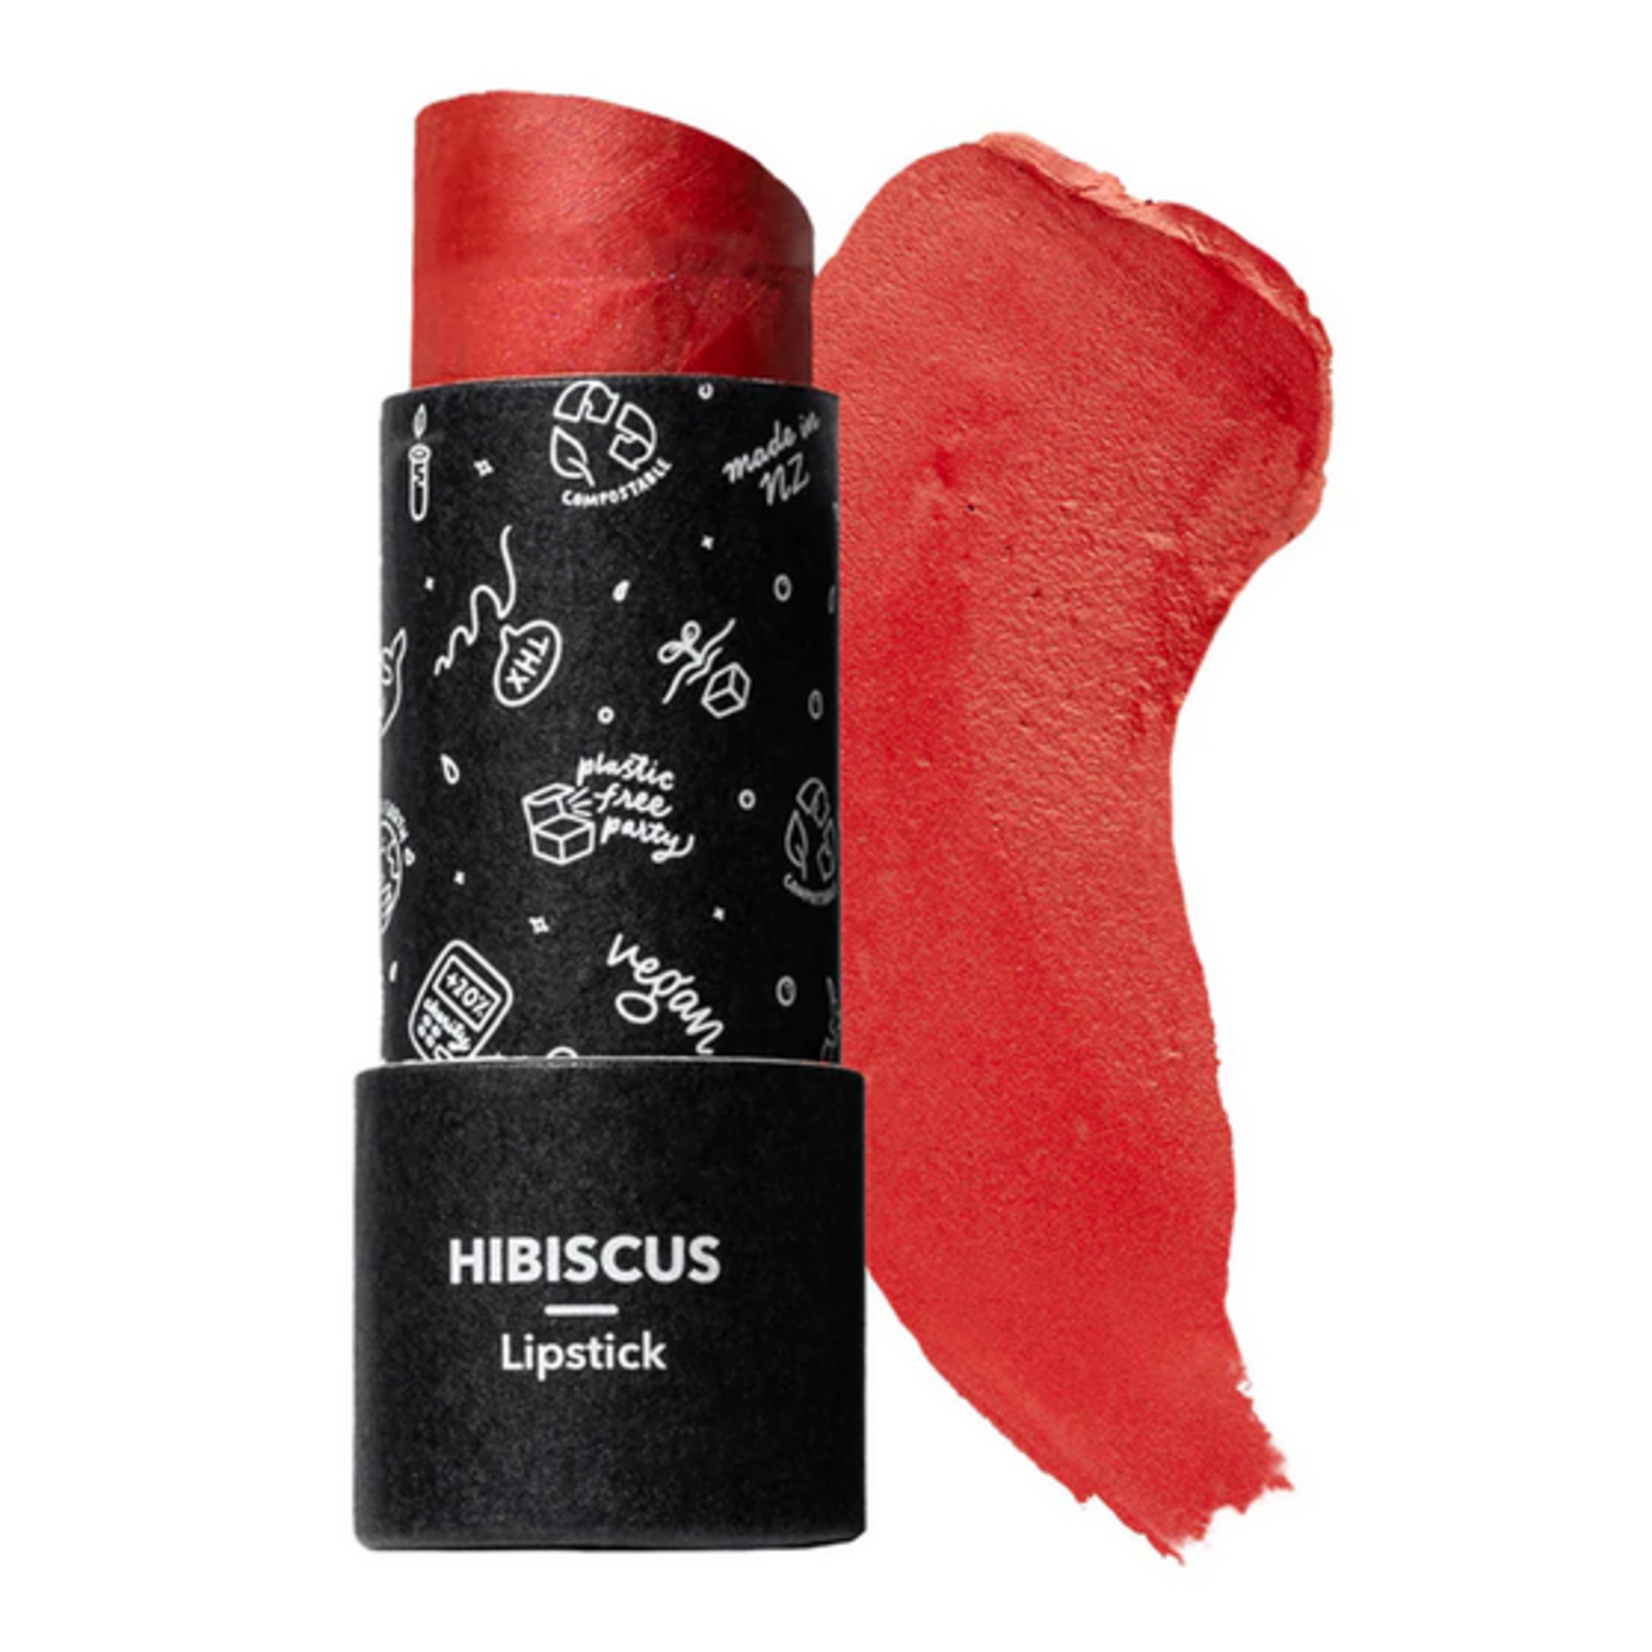 Ethique ethique Lipstick Hibiscus Vibrant Coral 8g